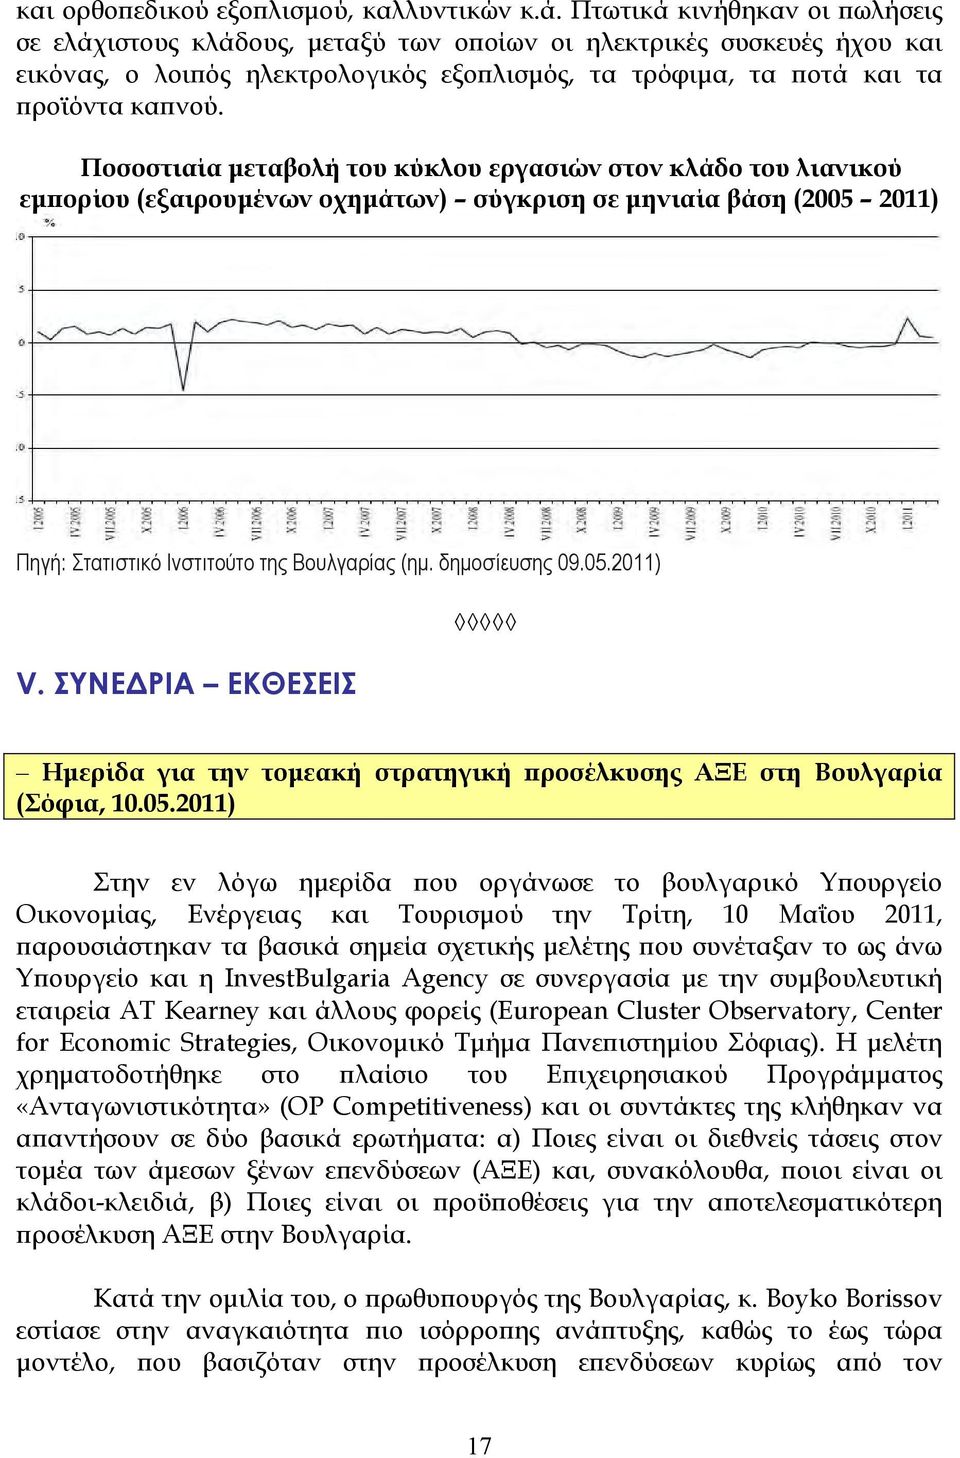 Ποσοστιαία µεταβολή του κύκλου εργασιών στον κλάδο του λιανικού εµϖορίου (εξαιρουµένων οχηµάτων) σύγκριση σε µηνιαία βάση (2005 2011) Πηγή: Στατιστικό Ινστιτούτο της Βουλγαρίας (ηµ. δηµοσίευσης 09.05.2011) V.